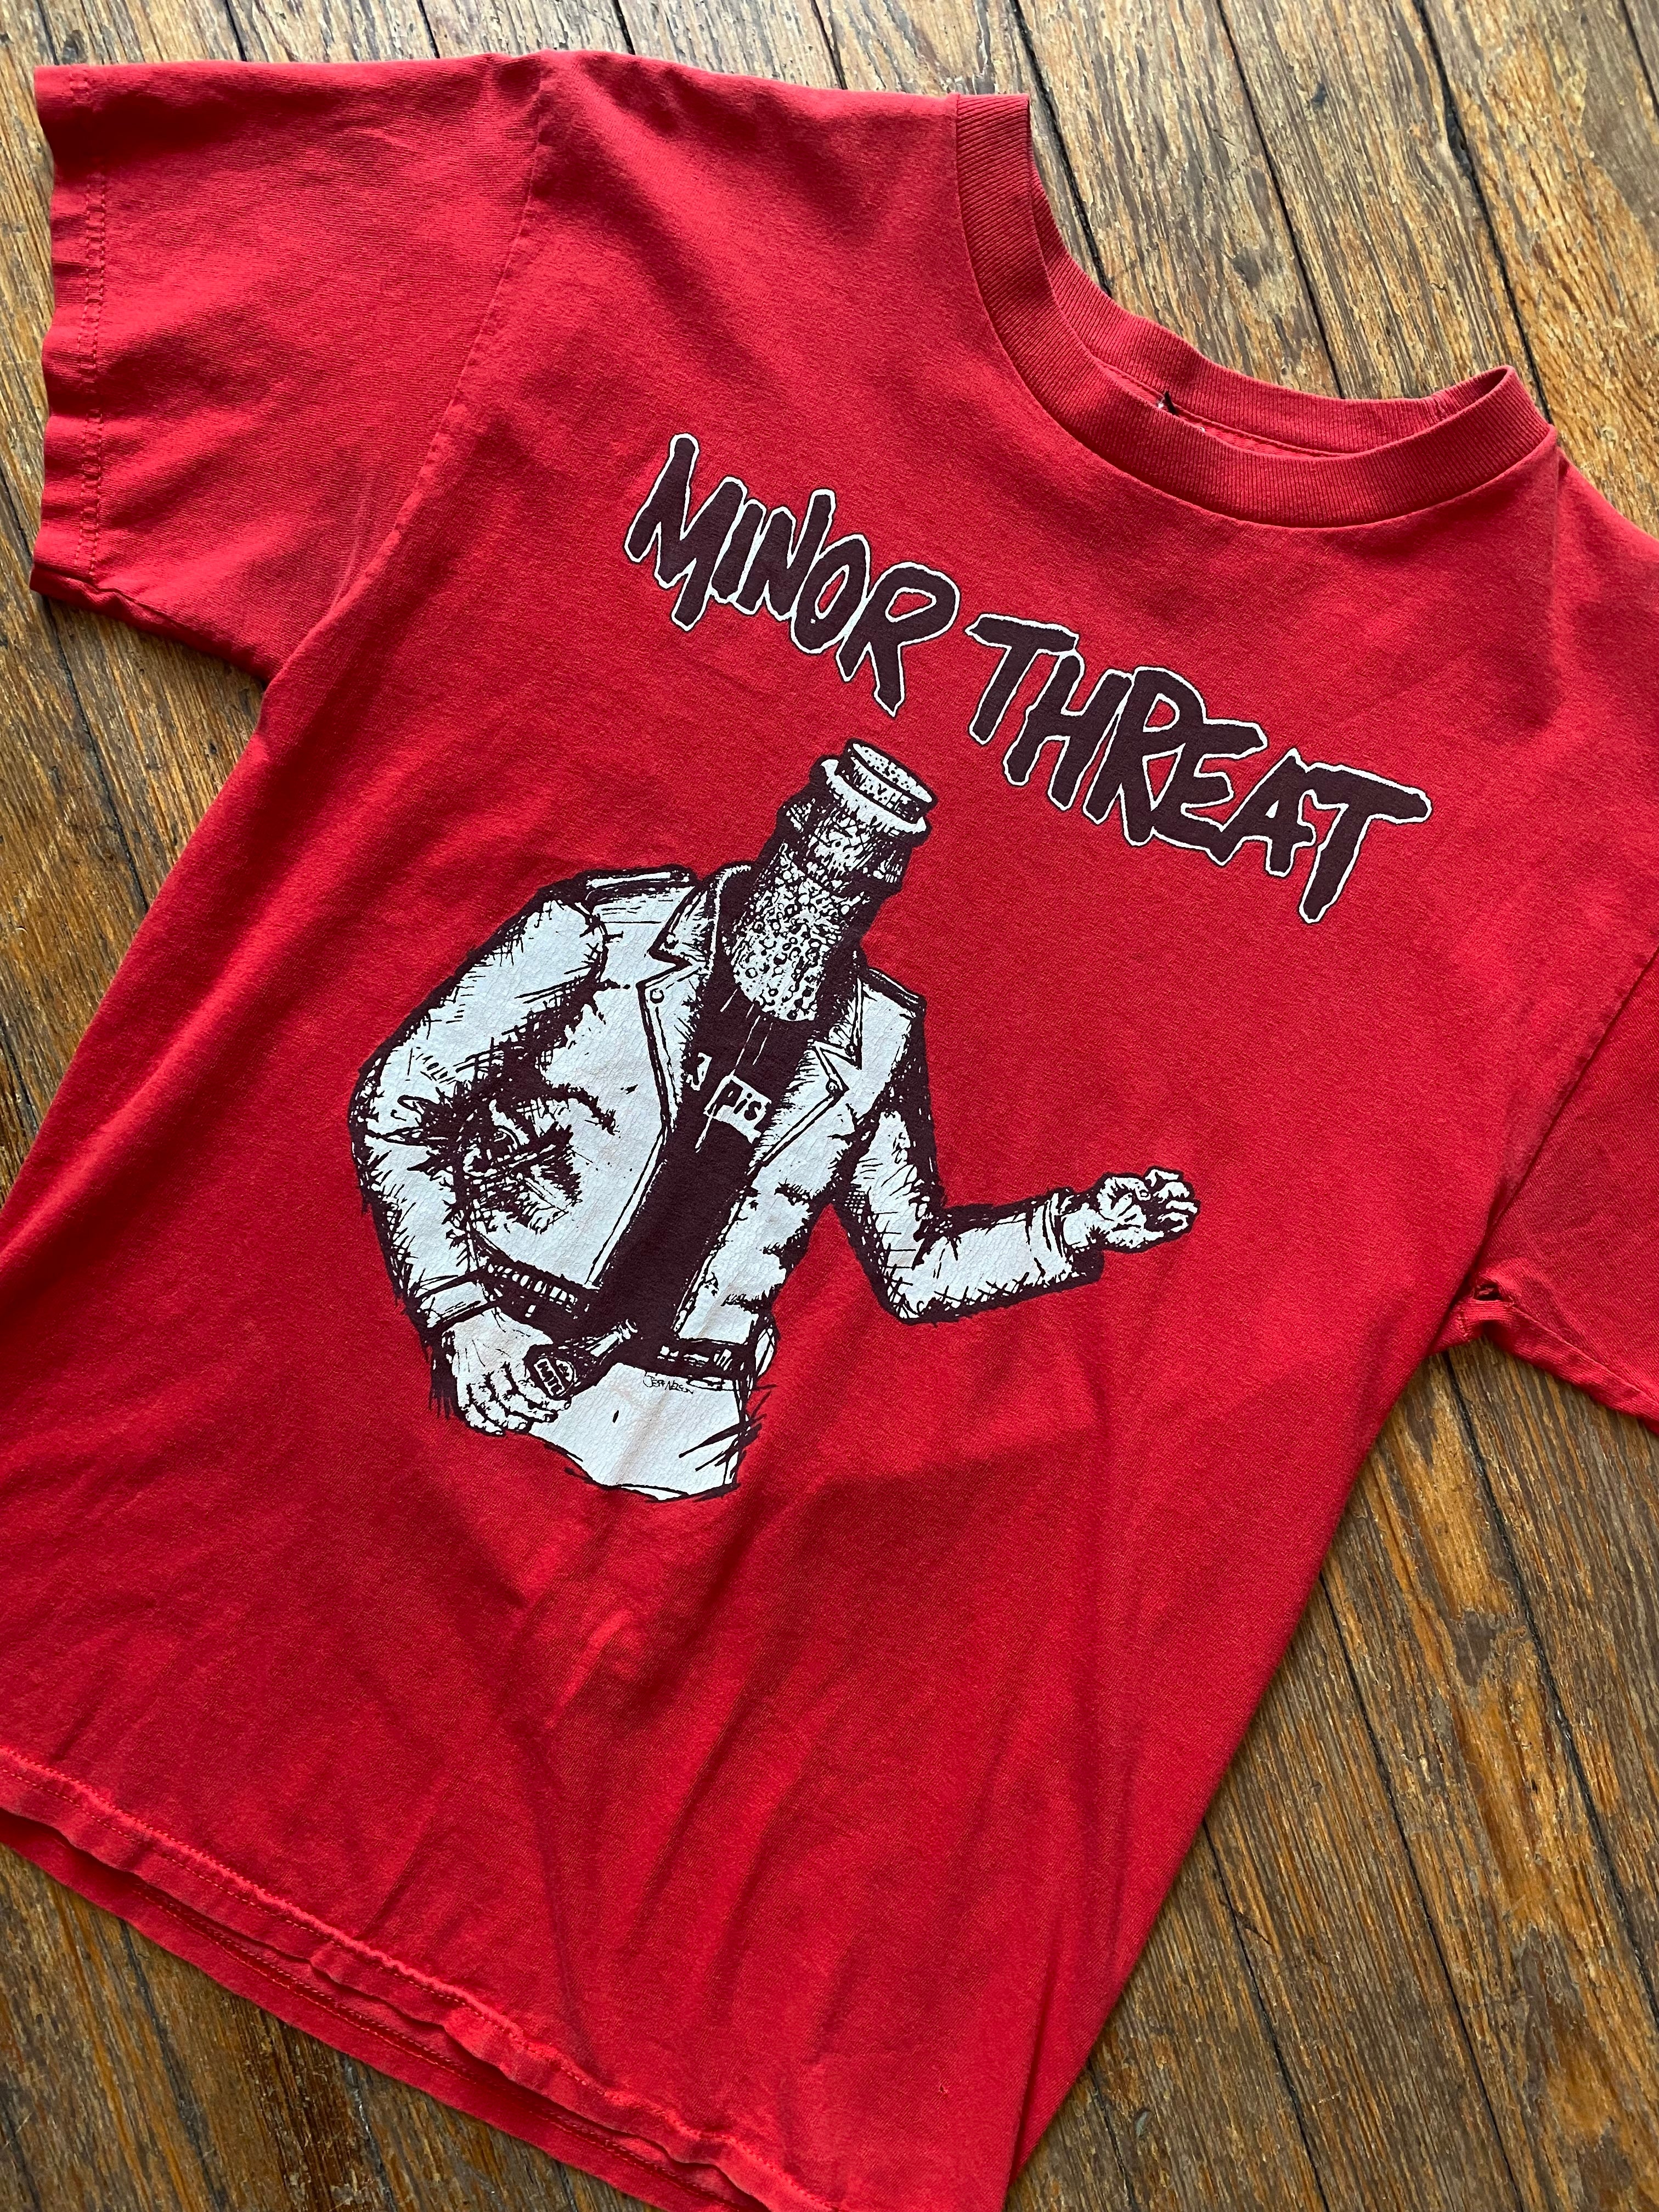 Vintage Minor Threat Bottled Violence T-Shirt